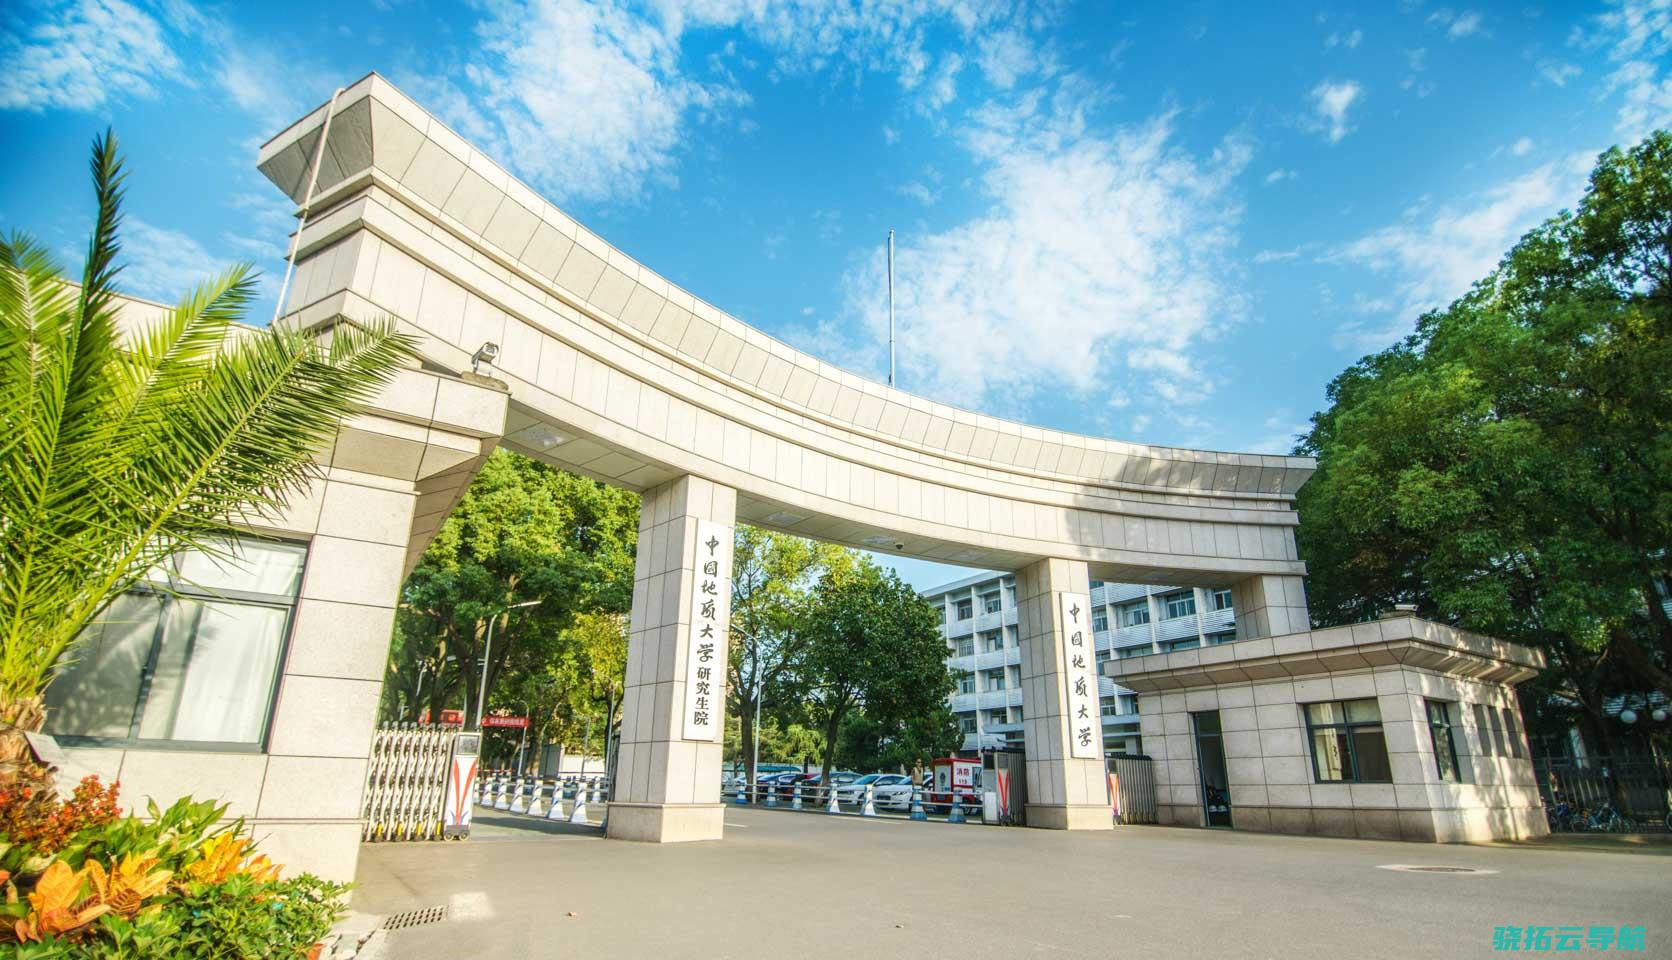 学科特征型大学如何开展 大学校长说 校长王焰新 中国地质大学 武汉